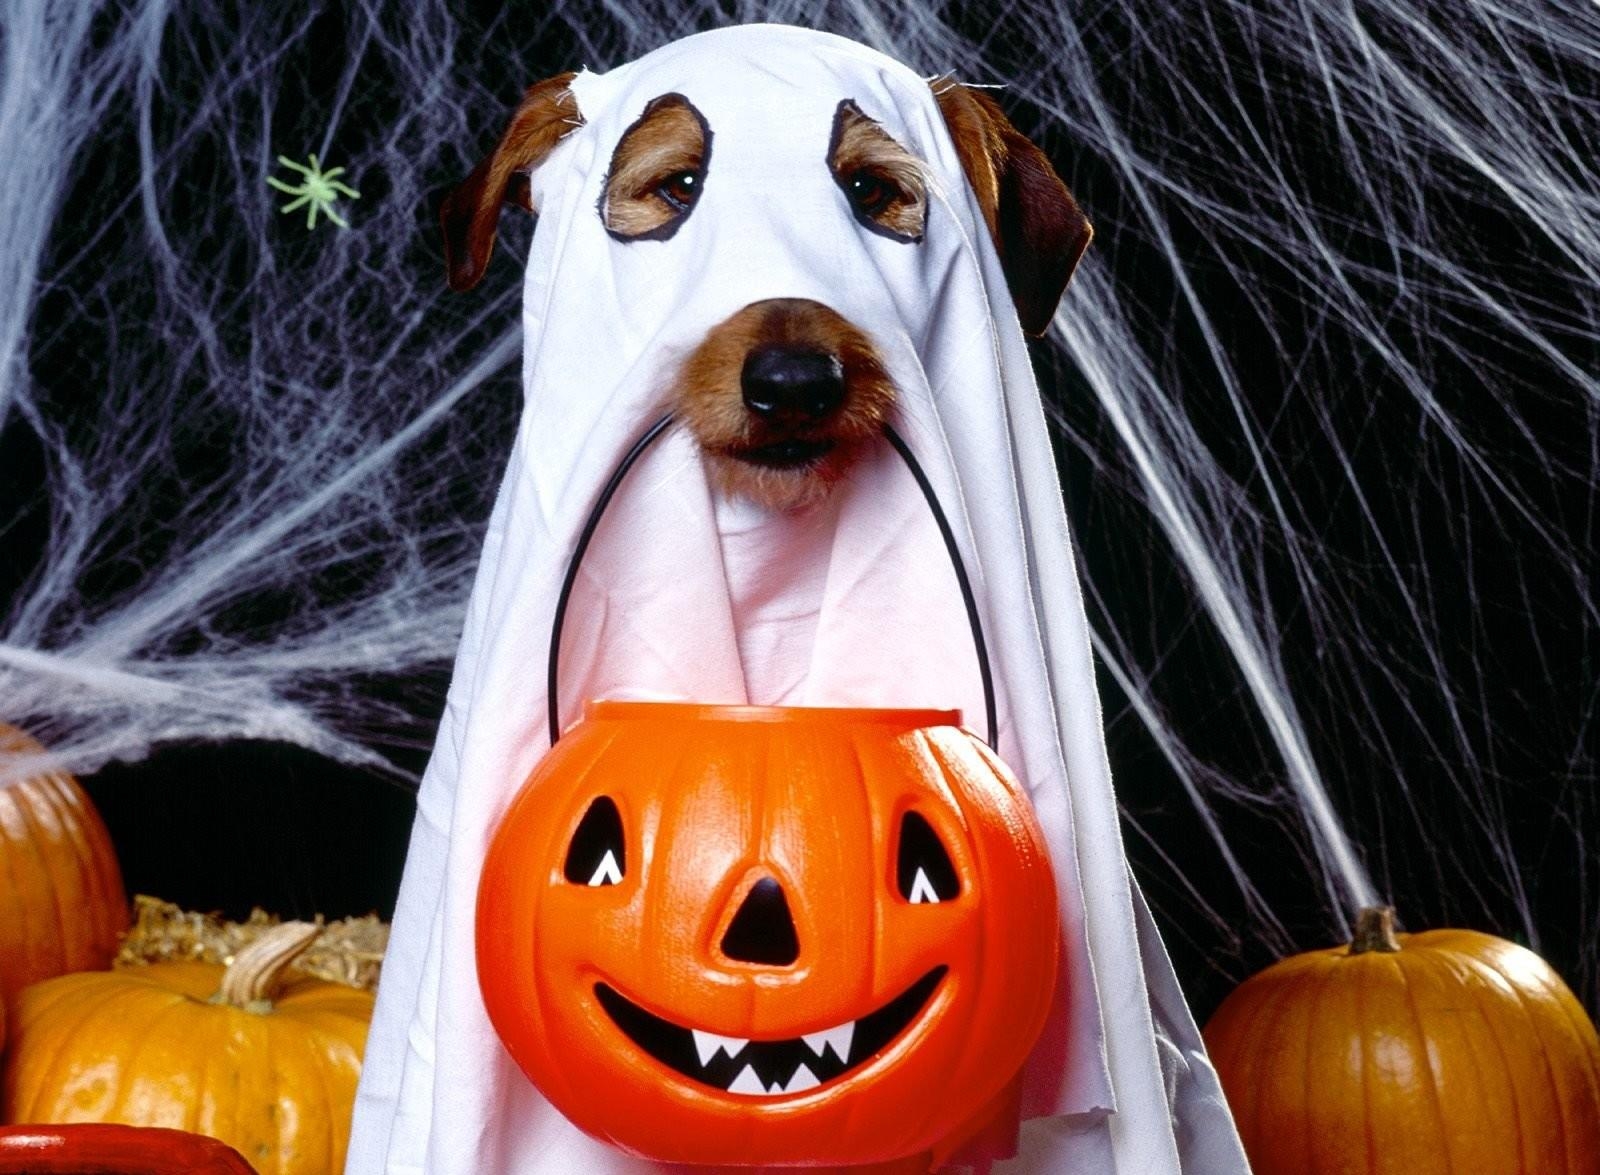 halloween, jack's lantern, holidays, web, dog, holiday, bringing, reduction